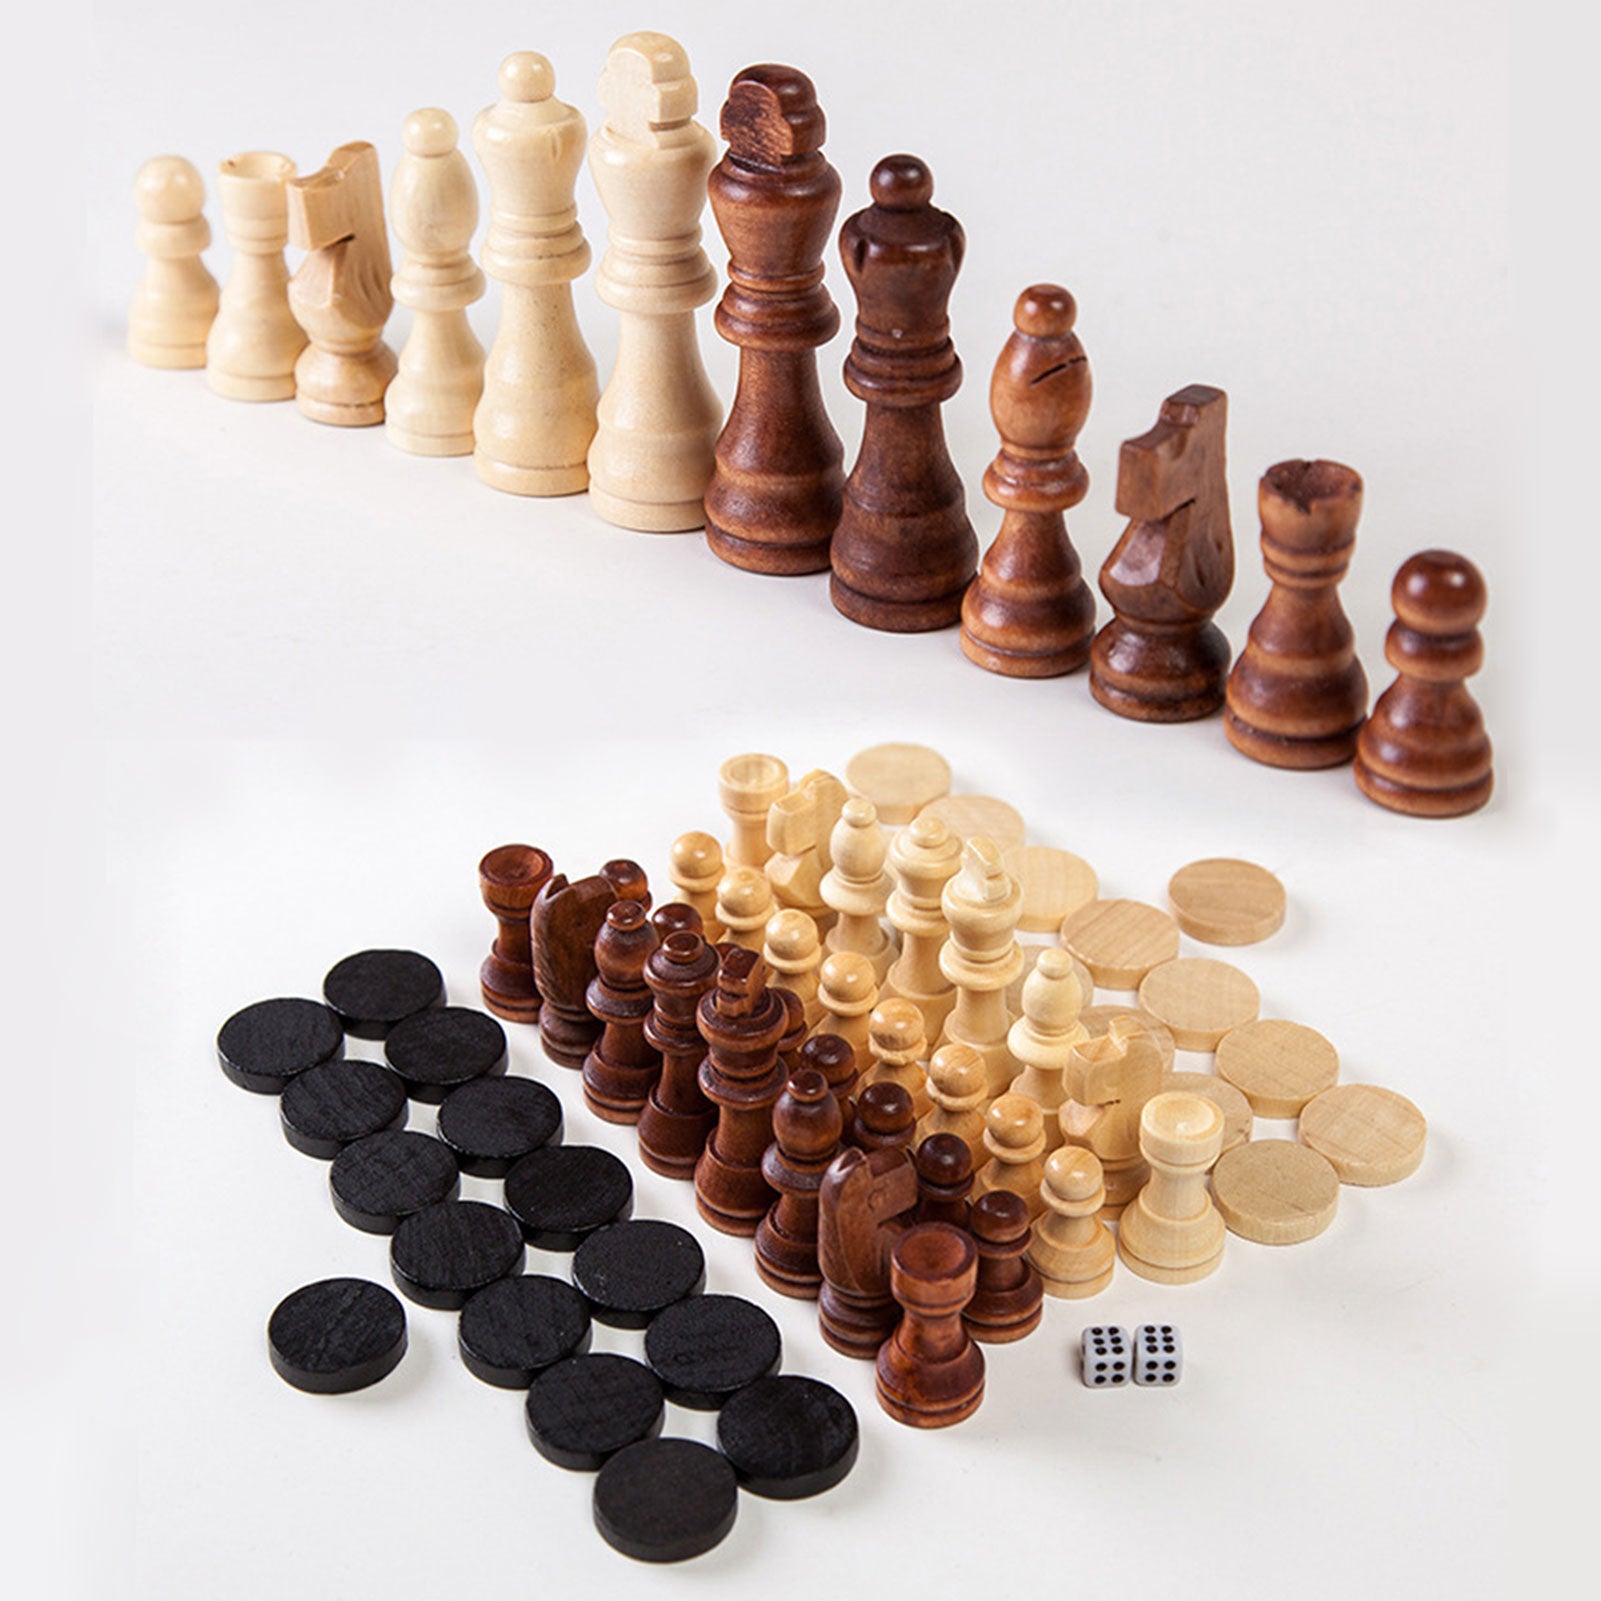 echiquier en bois jeu d'echec en bois fait main echiquier en bois ancien jeu d'échecs en bois jeu d'echec en bois pliable pièces d'echec en bois